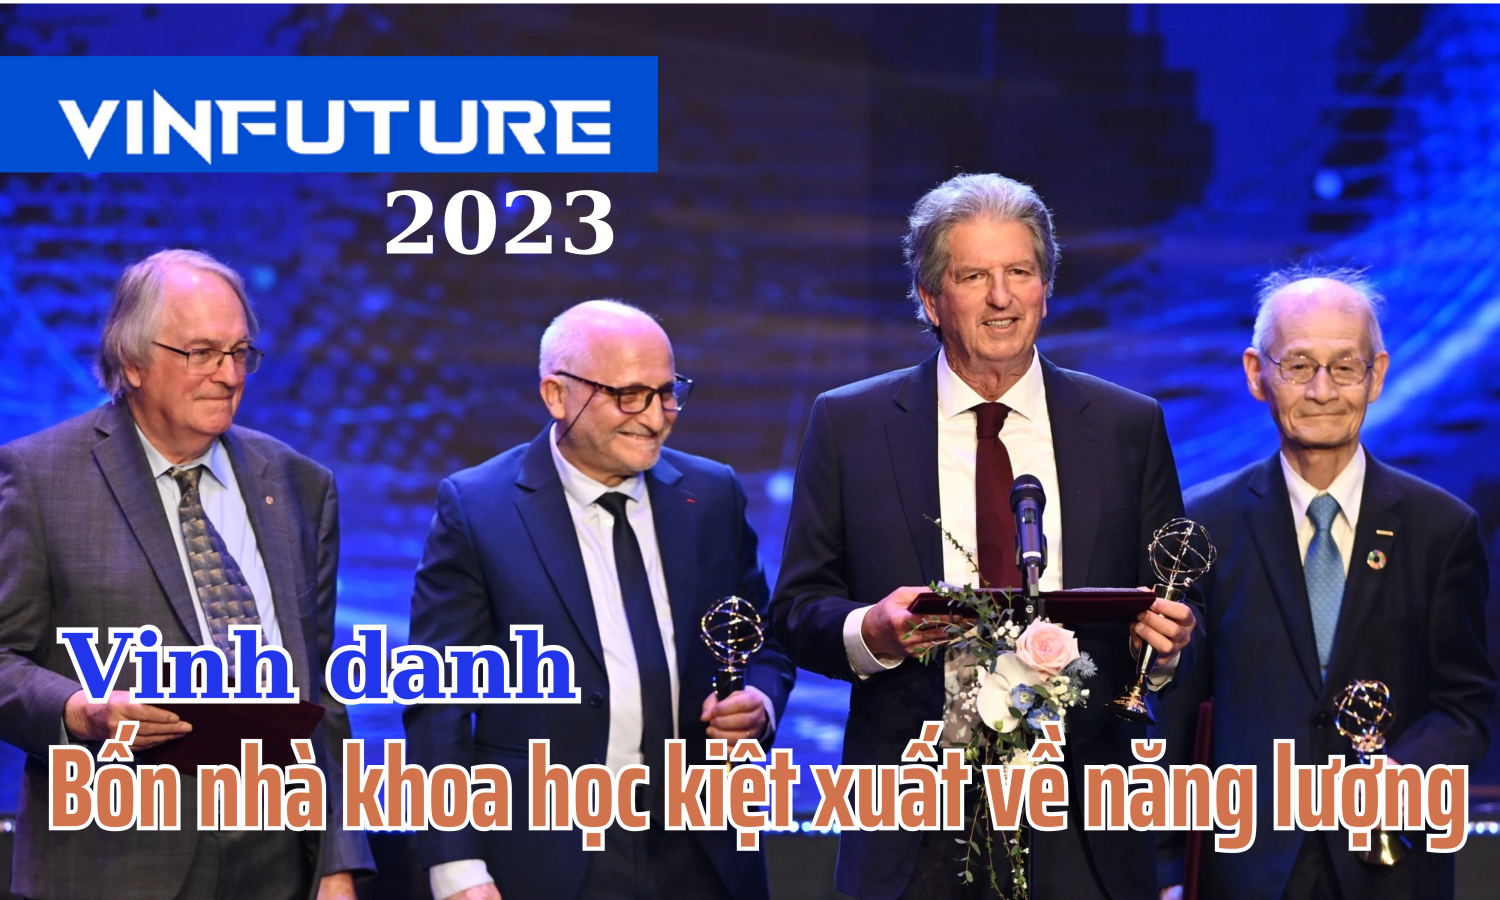 VinFuture 2023 - vinh danh bốn nhà khoa học kiệt xuất về năng lượng